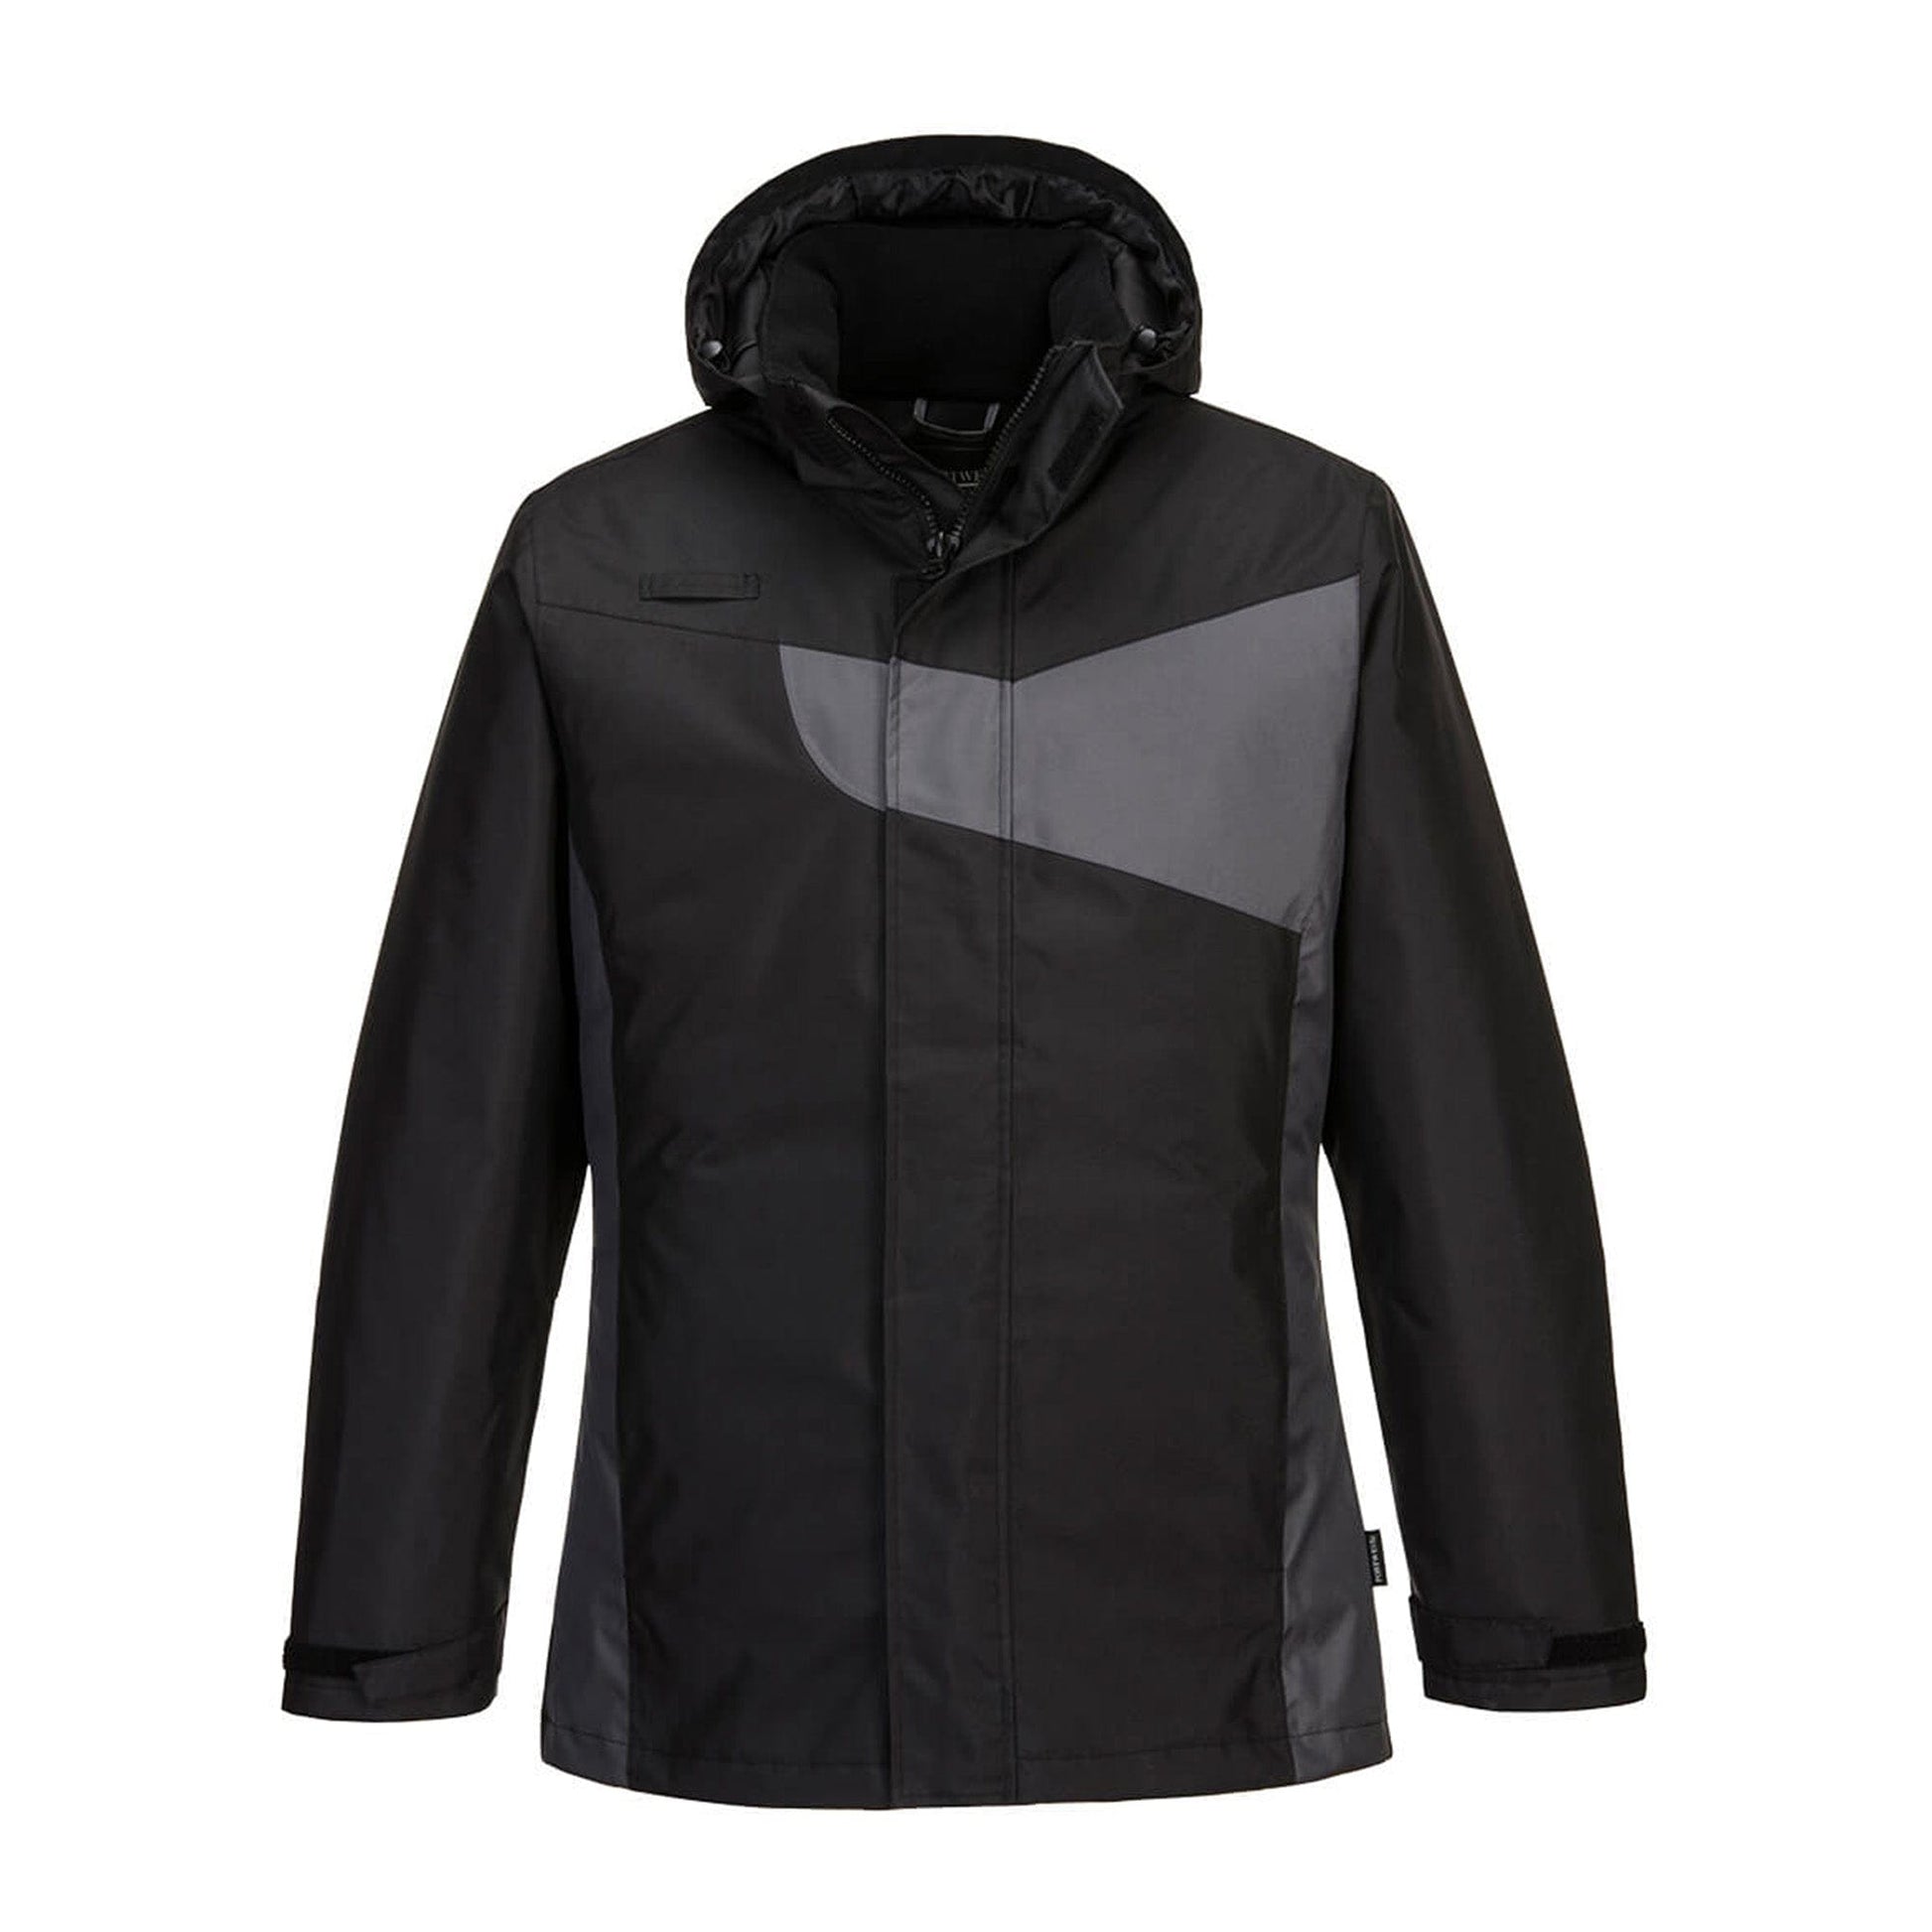 Portwest PW2 Winter Jacket PW260 Black/Grey